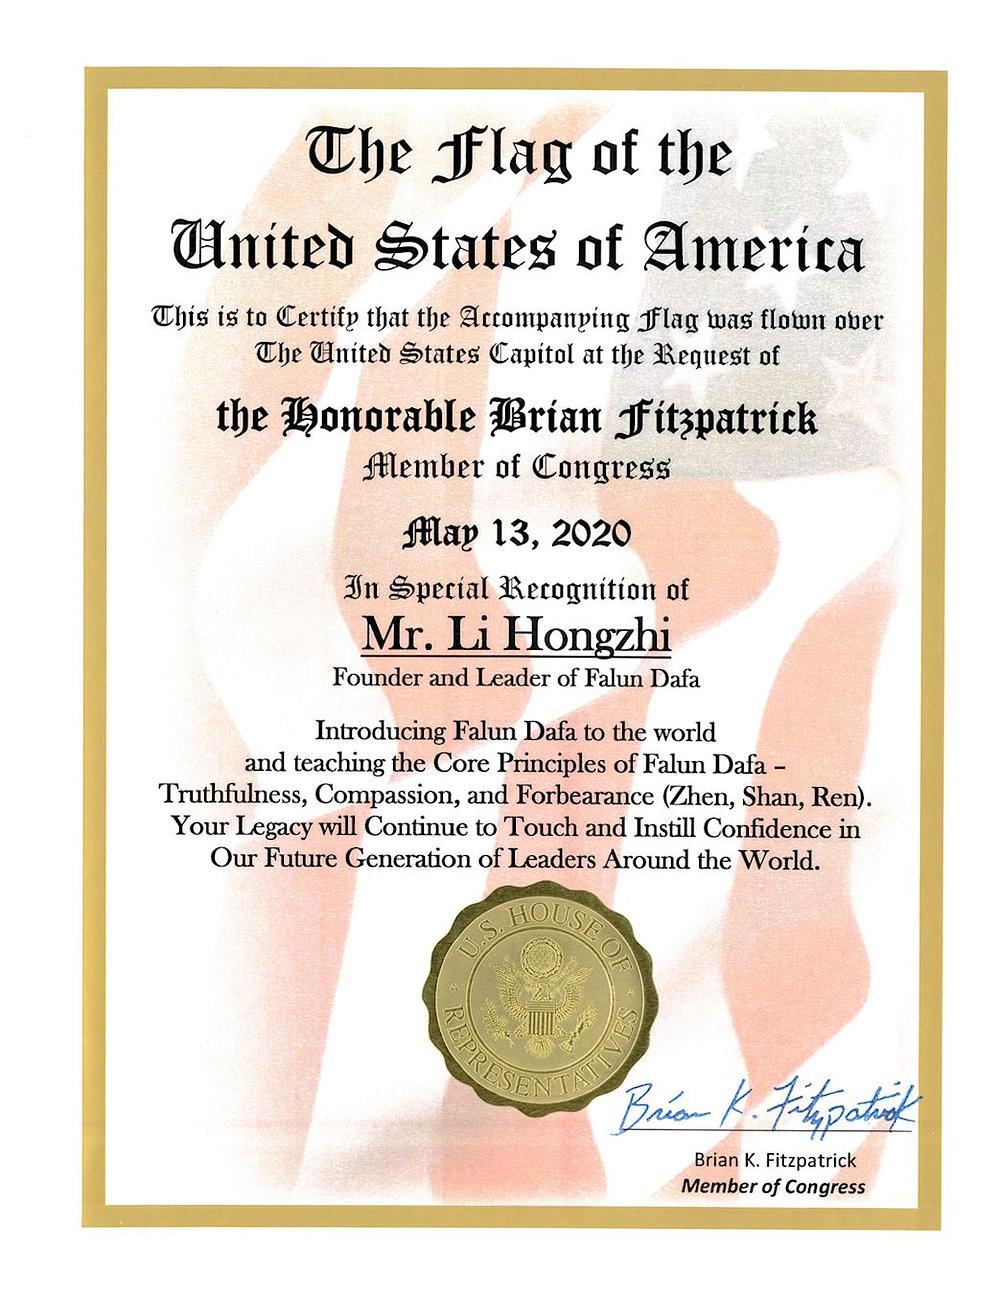 Posebno priznanje gospodinu Li Hongzhiju, osnivaču Falun Dafa